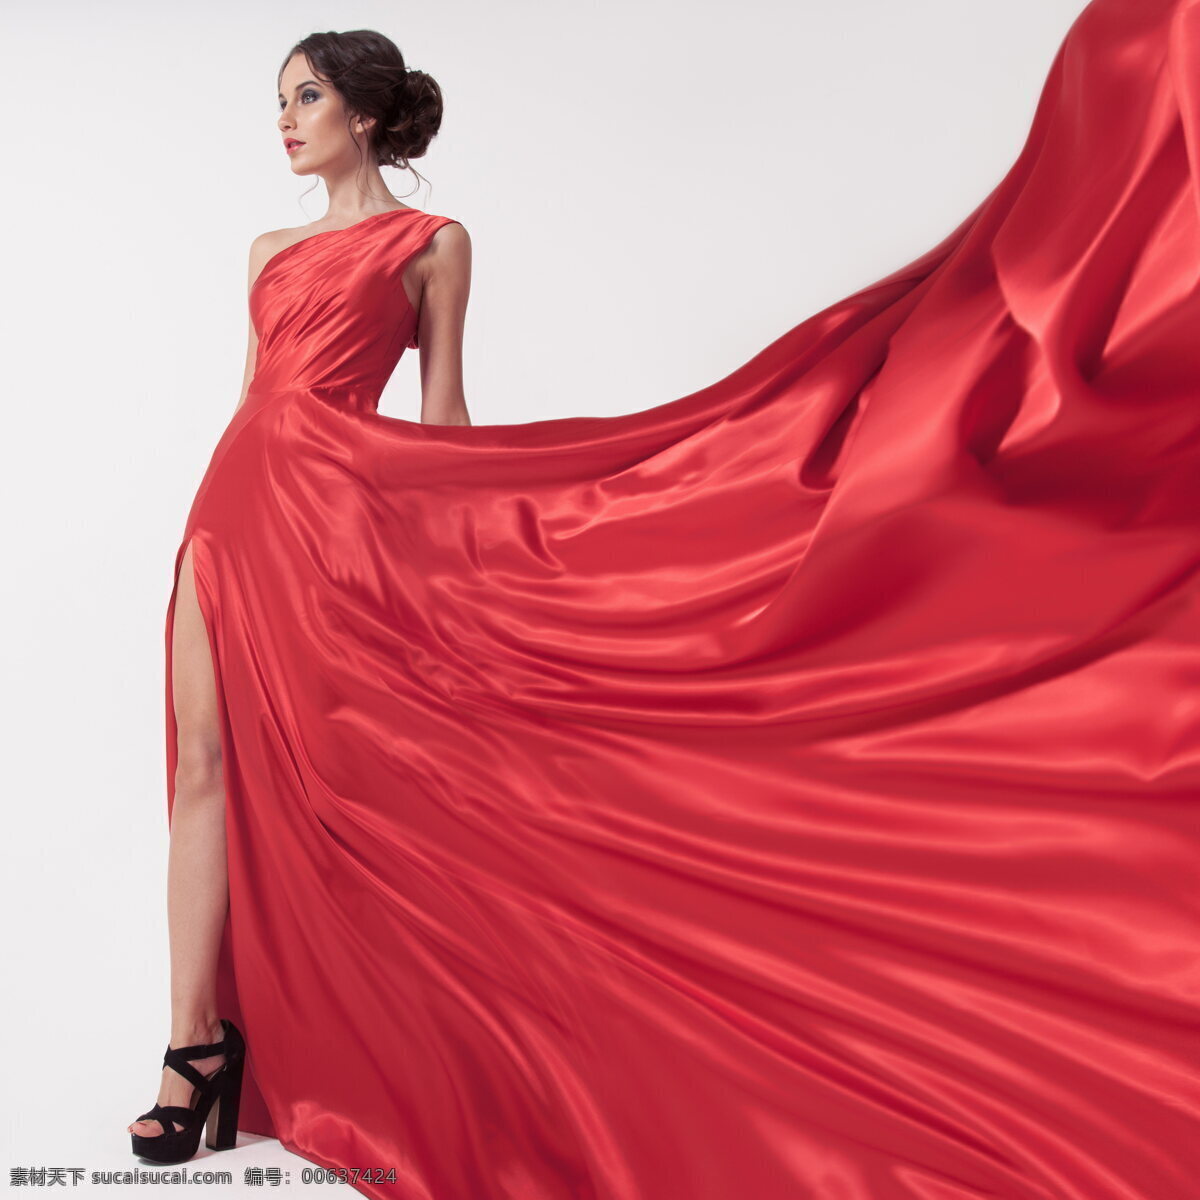 红色 礼服 美女写真 礼服美女 红色礼服 美女 红裙子 红裙 裙装